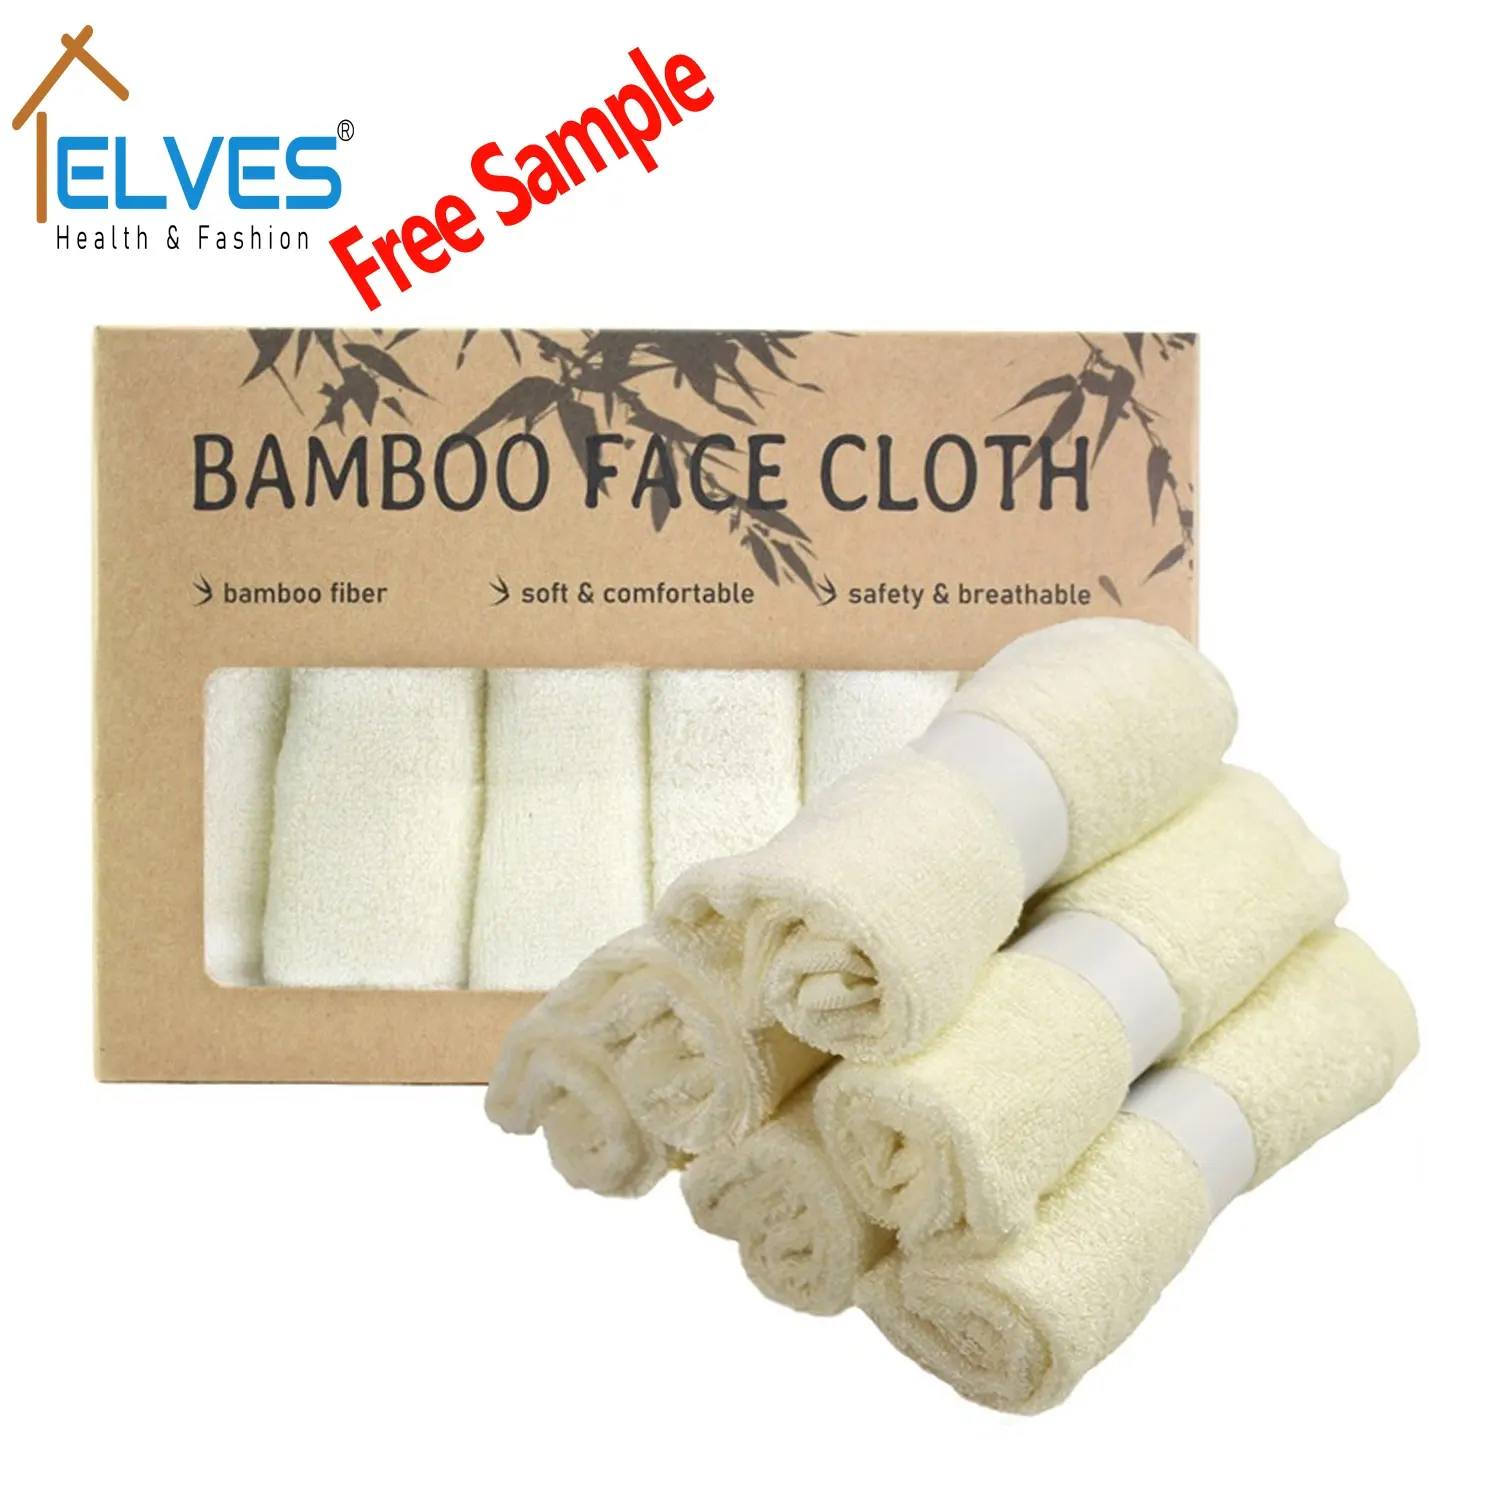 6 gant de toilette en bambou bio pour bébés et adultes, lavable, réutilisable paquet de 6